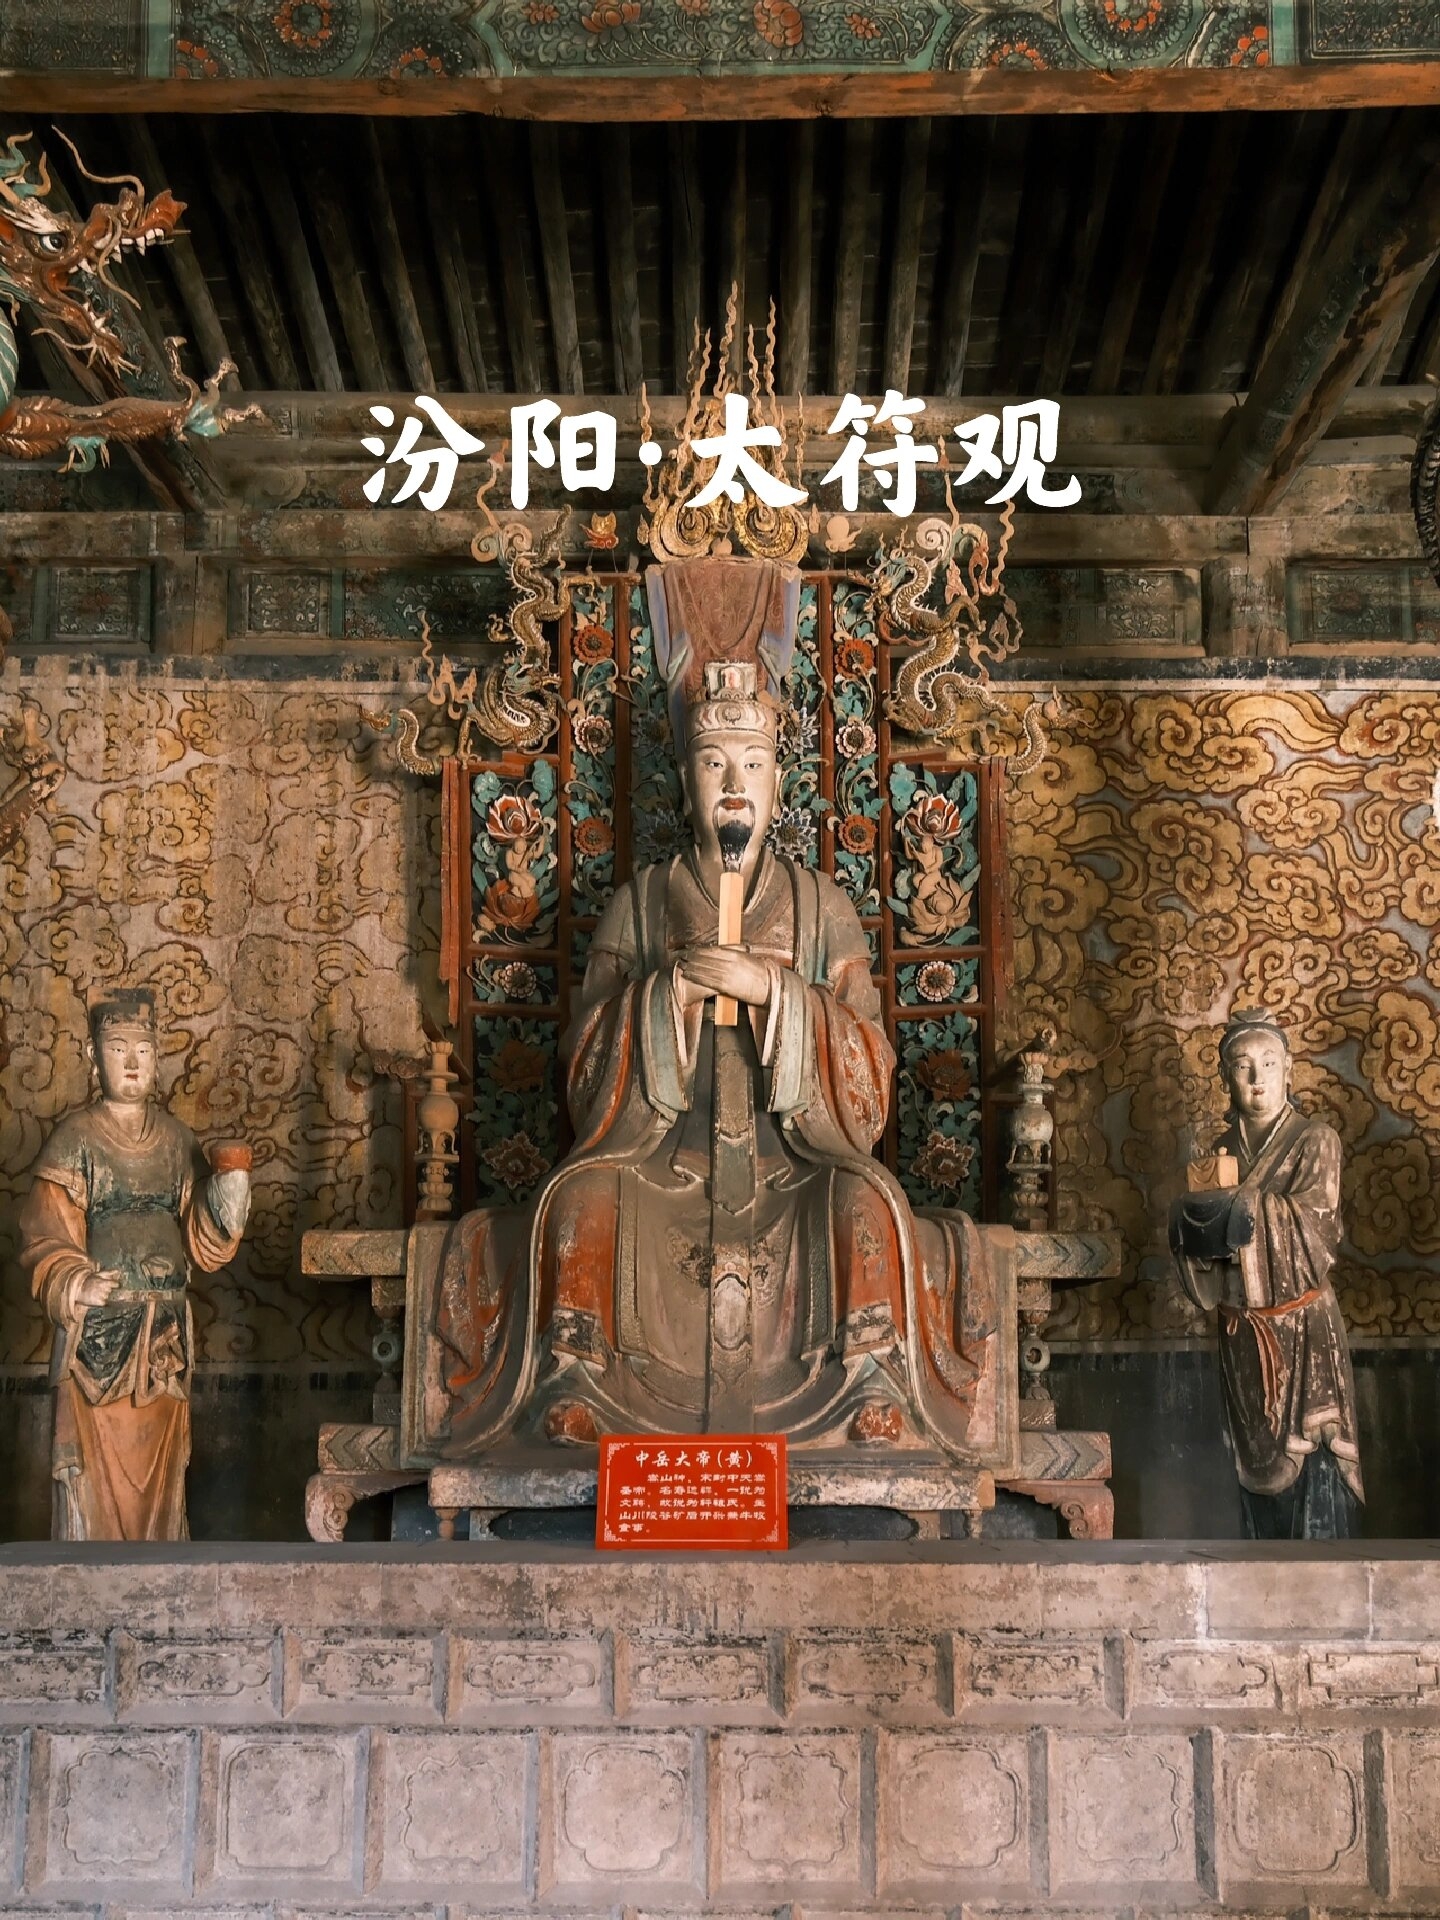 汾阳太符观是一座具有悠久历史的道教庙宇